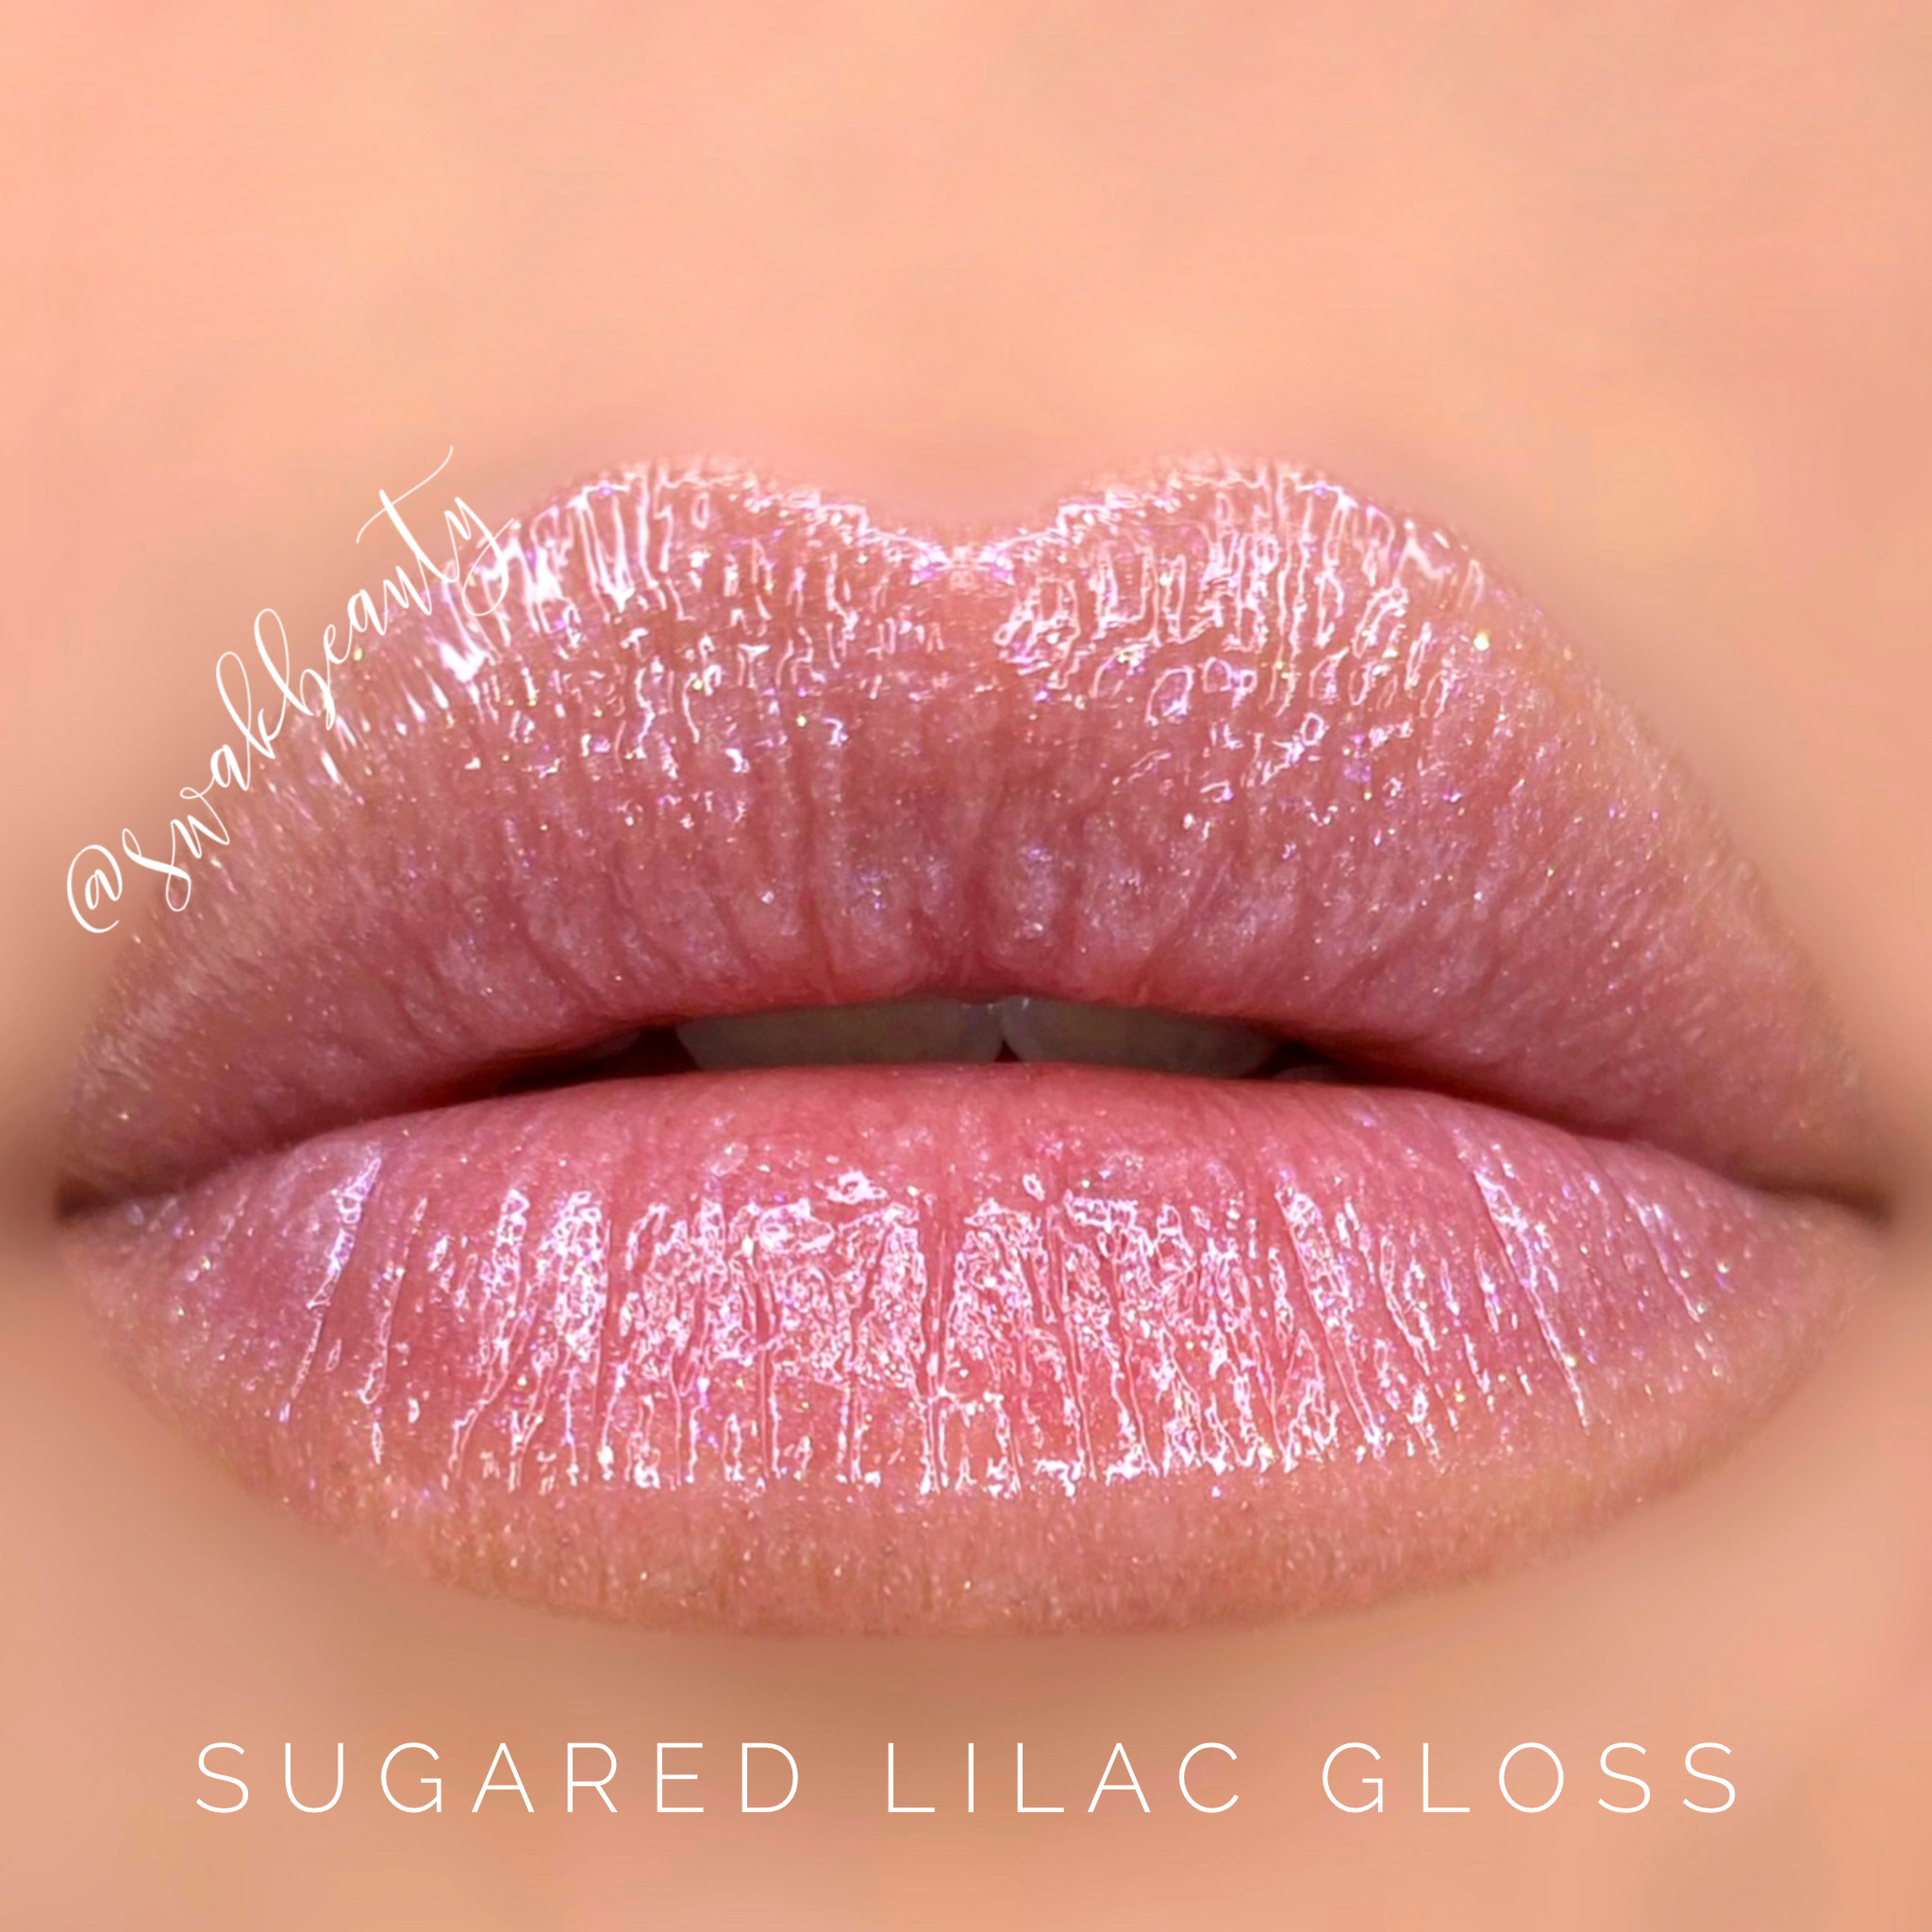 SugaredLilacGloss-lips